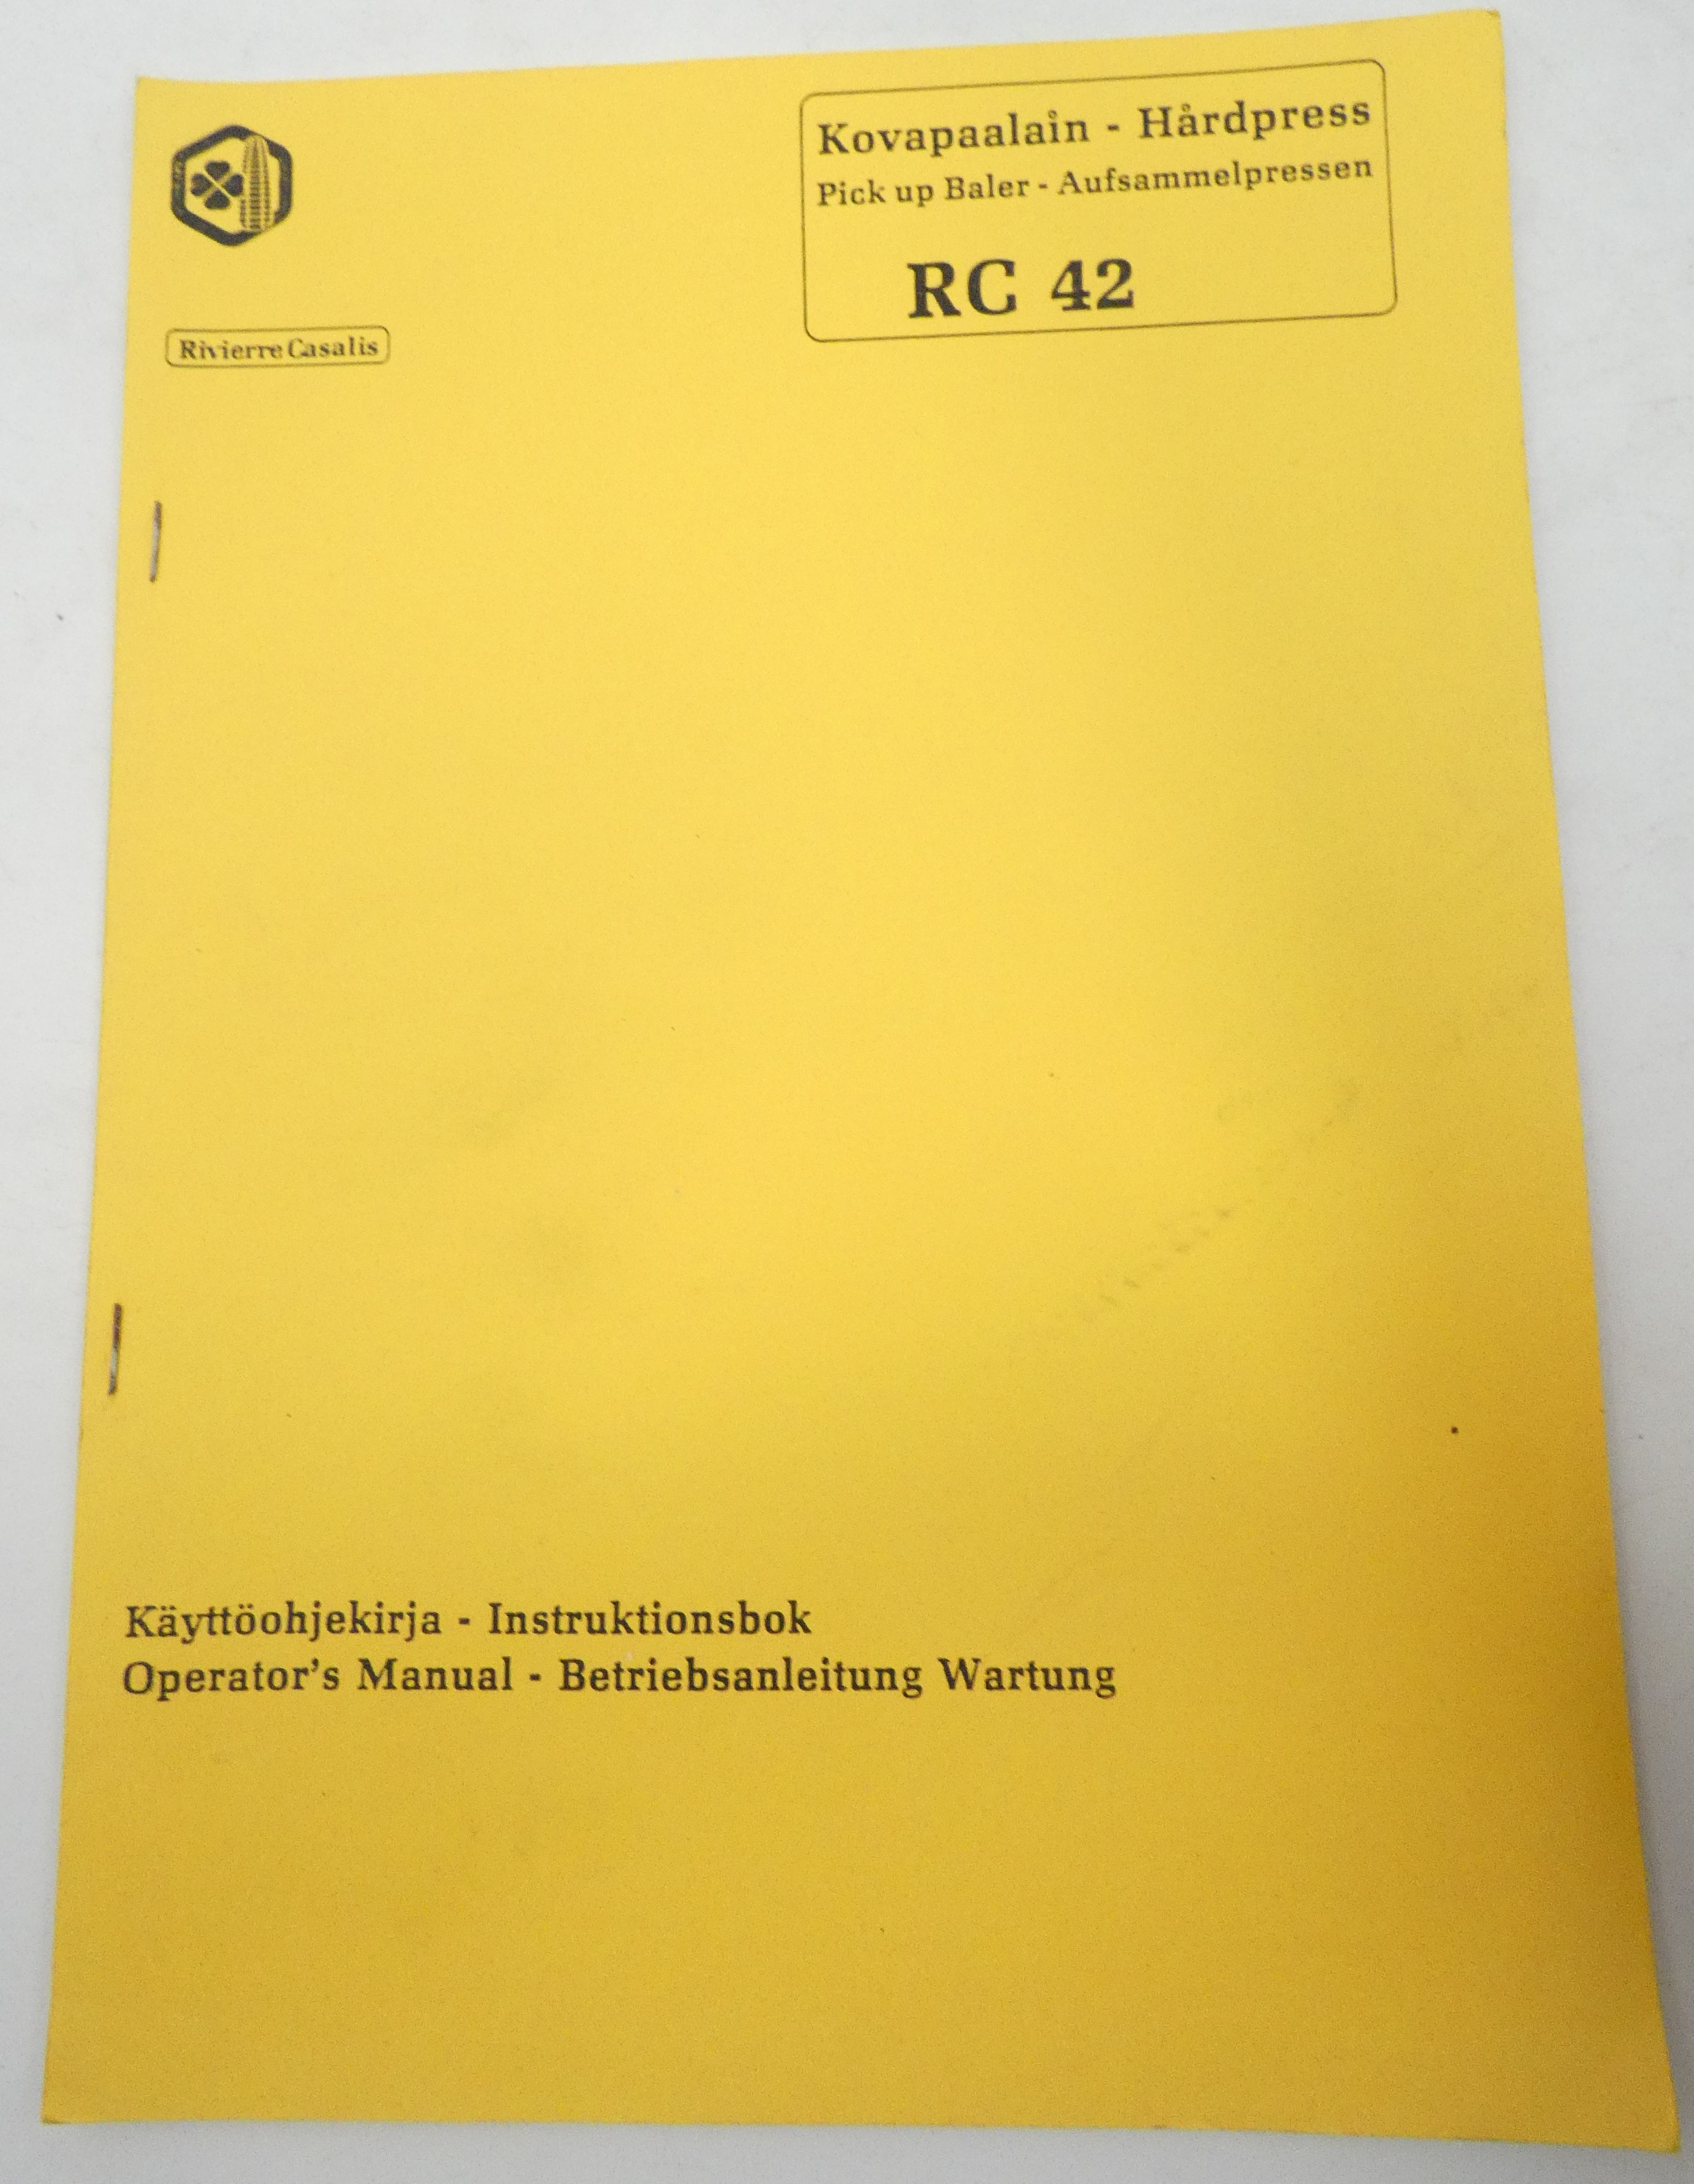 Rivierre Casalis RC42 kovapaalain käyttöohjekirja